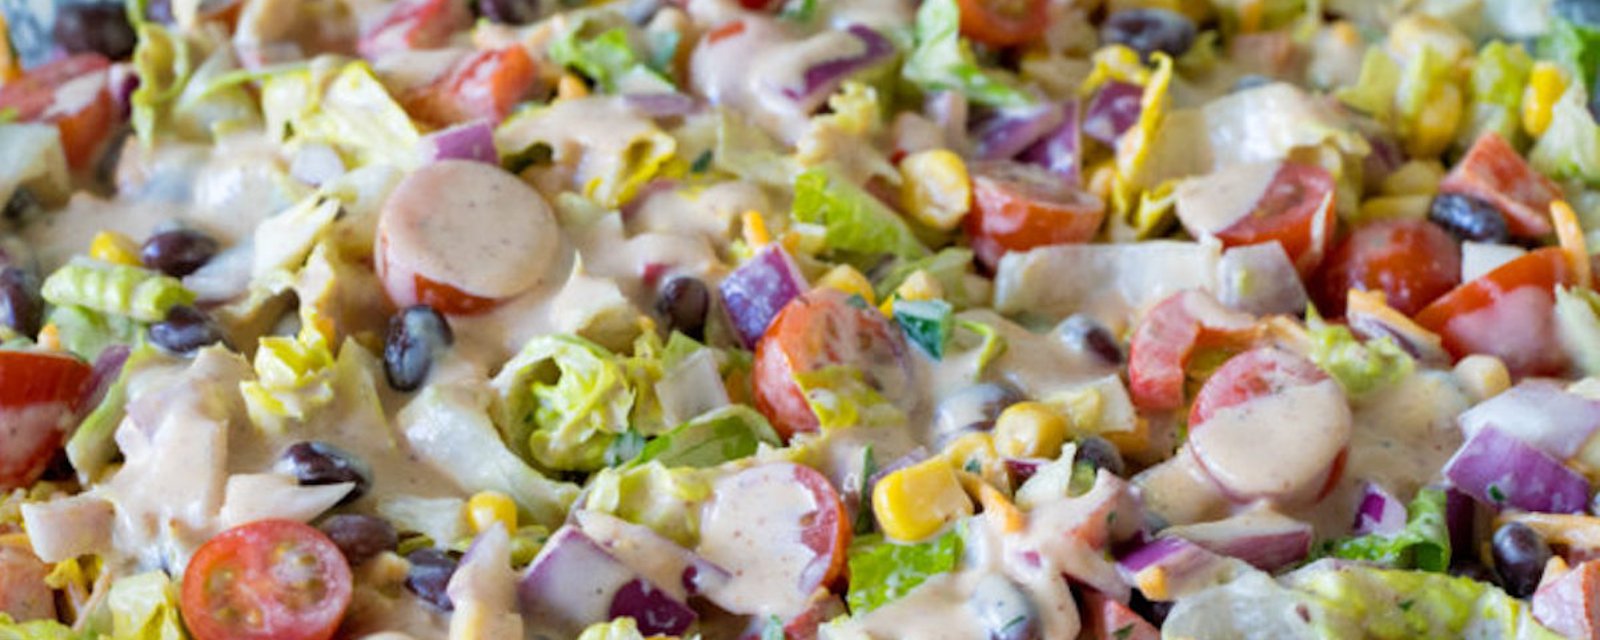 Une super idée pour le lunch: la salade cowboy